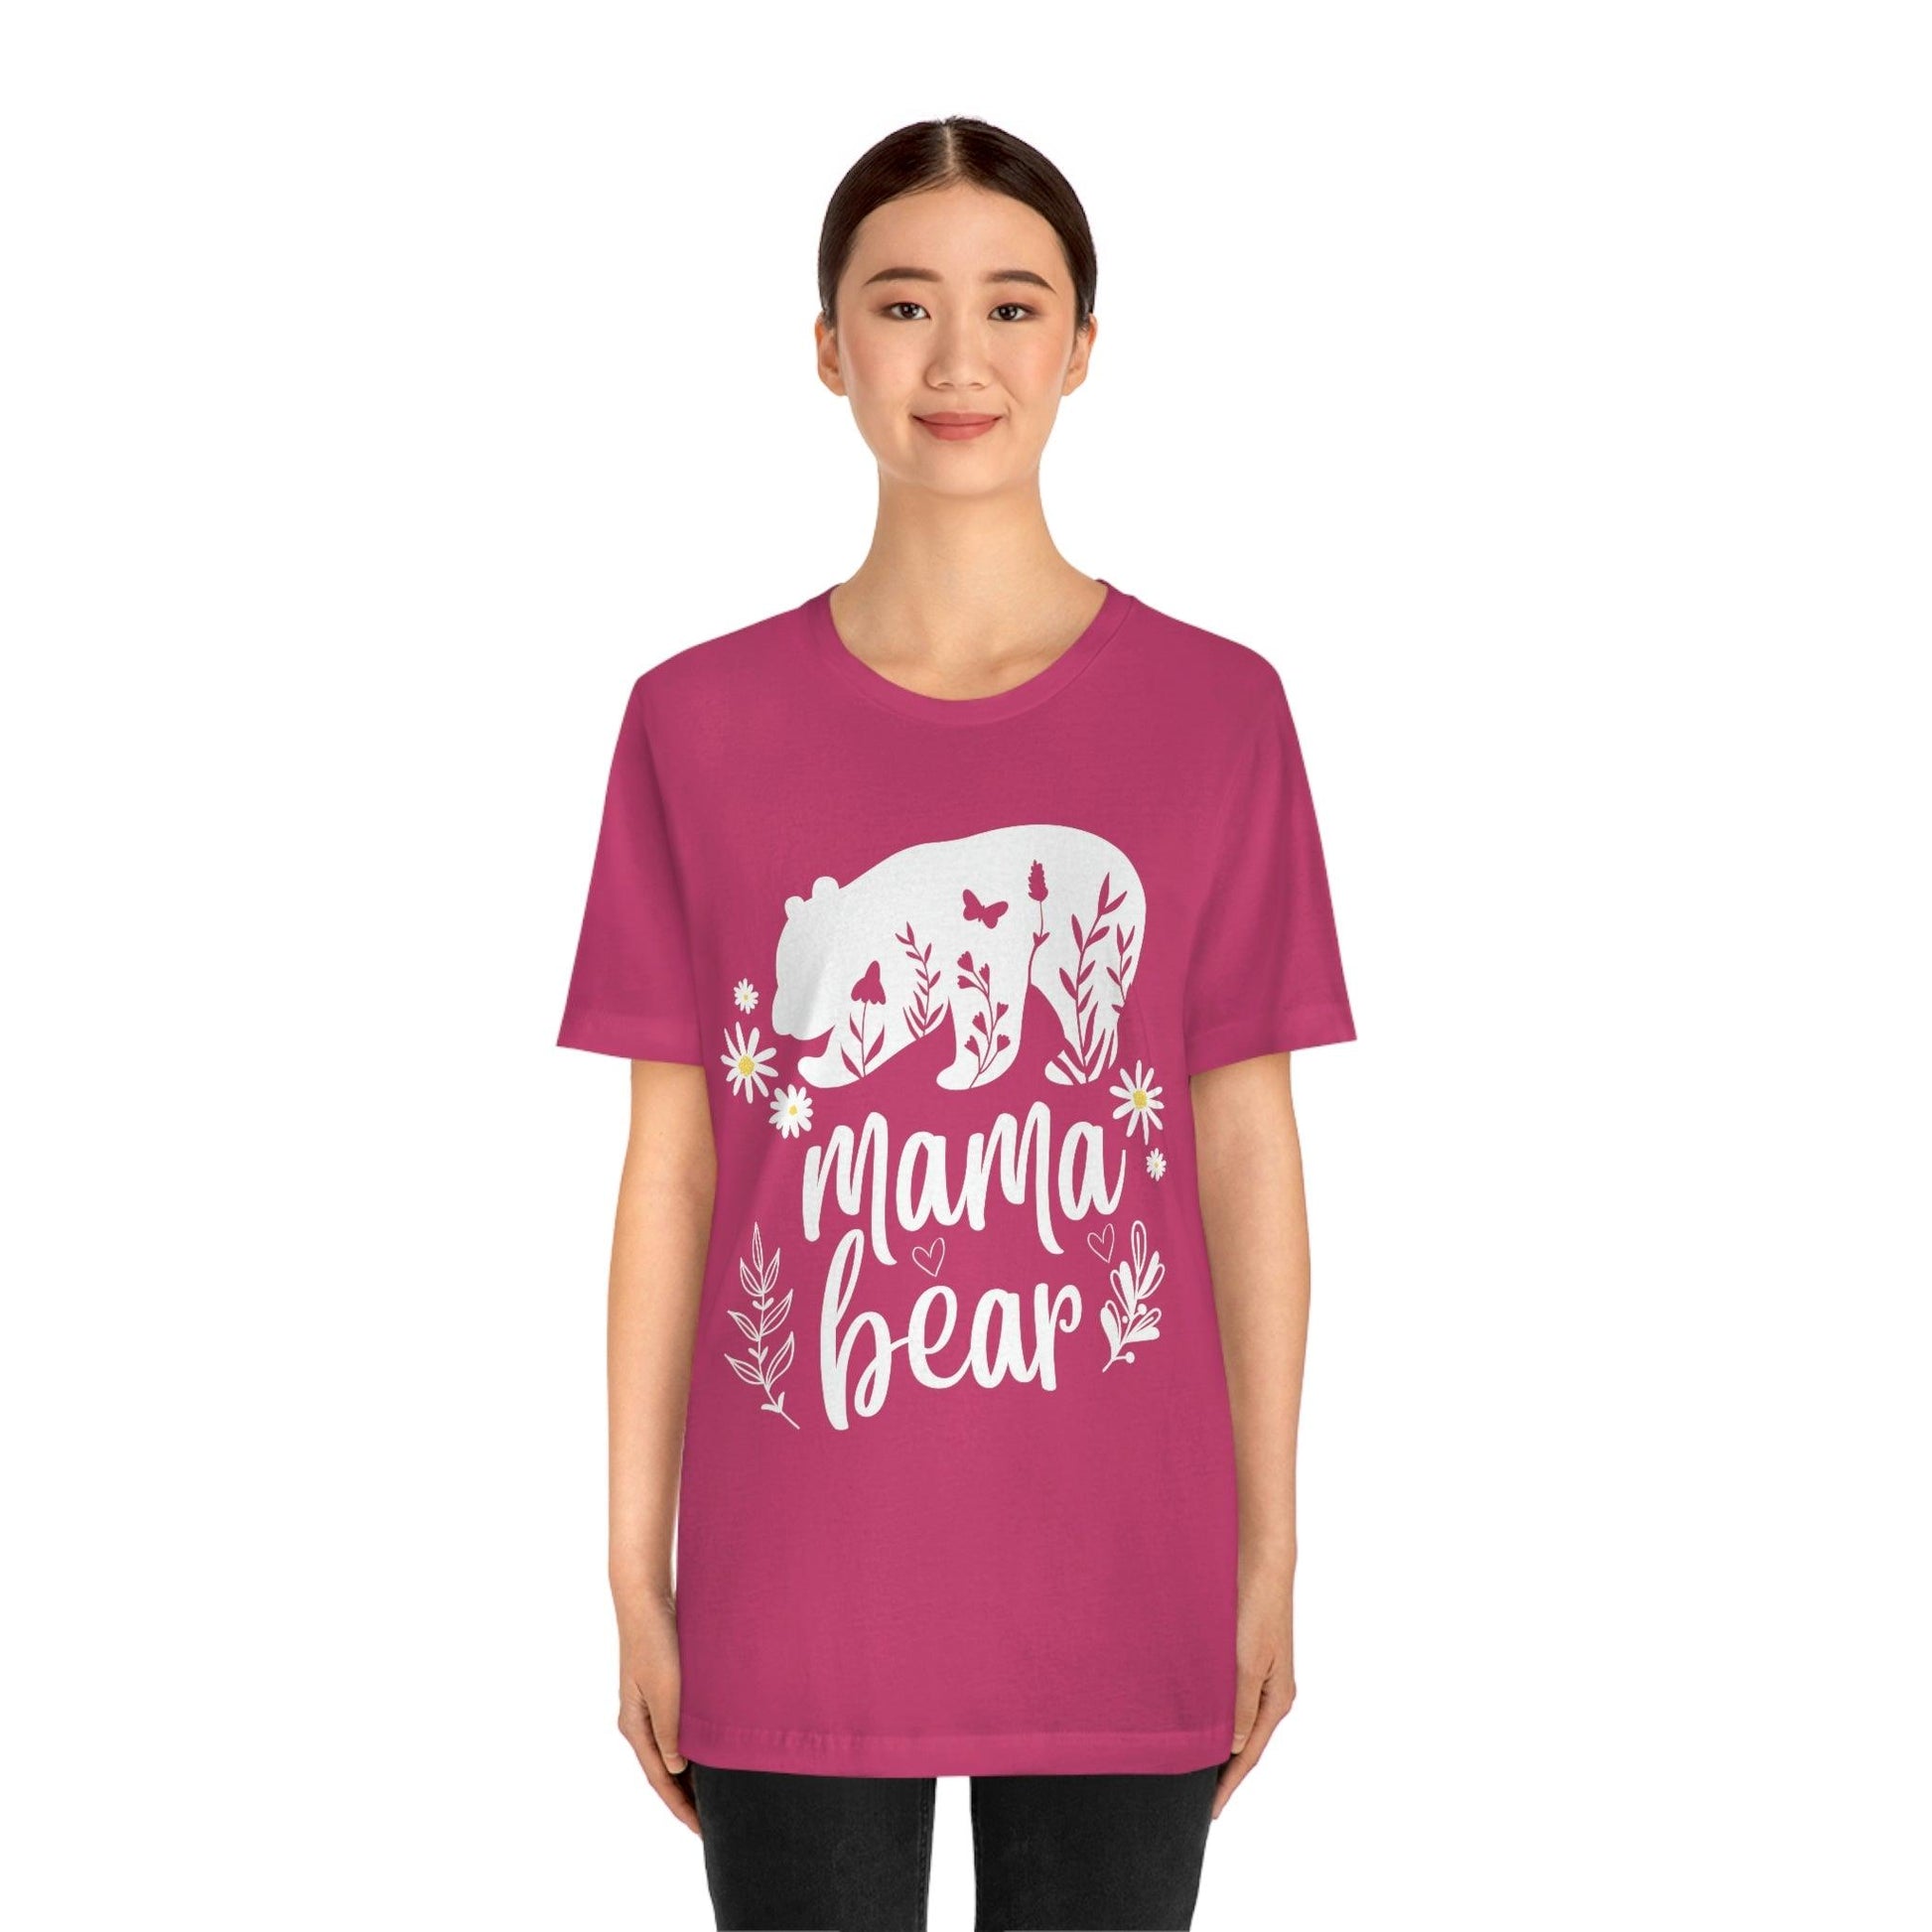 Mothers day shirt | Mama Bear Shirt | Mama Bear Tshirt, Funny mom shirt | best mom shirt | Momma Bear, Mama Bear Gift, Animal Nature Lover Shirt - Giftsmojo